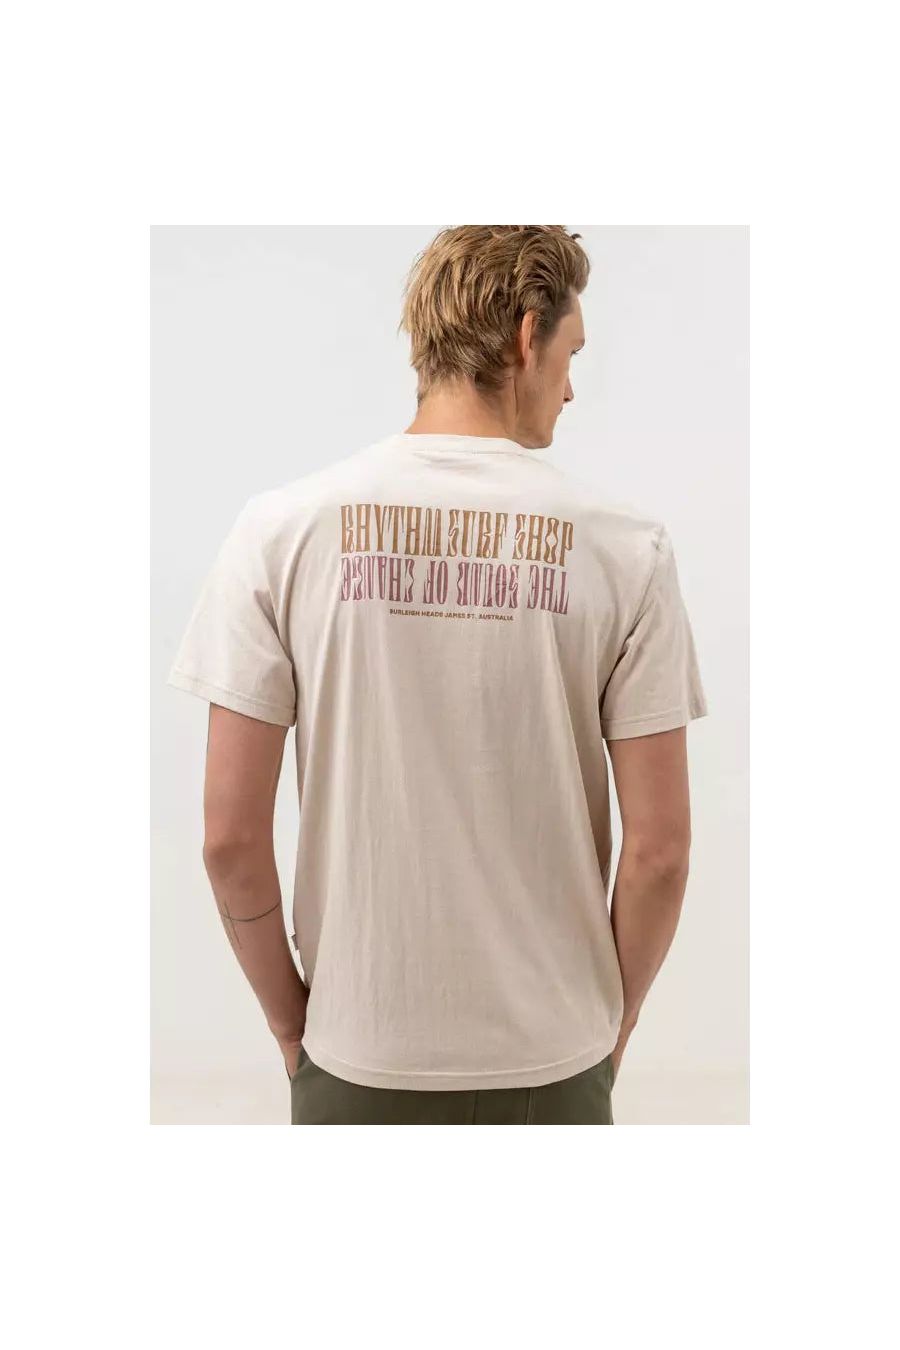 Rhythm Shop Short Sleeve T-Shirt